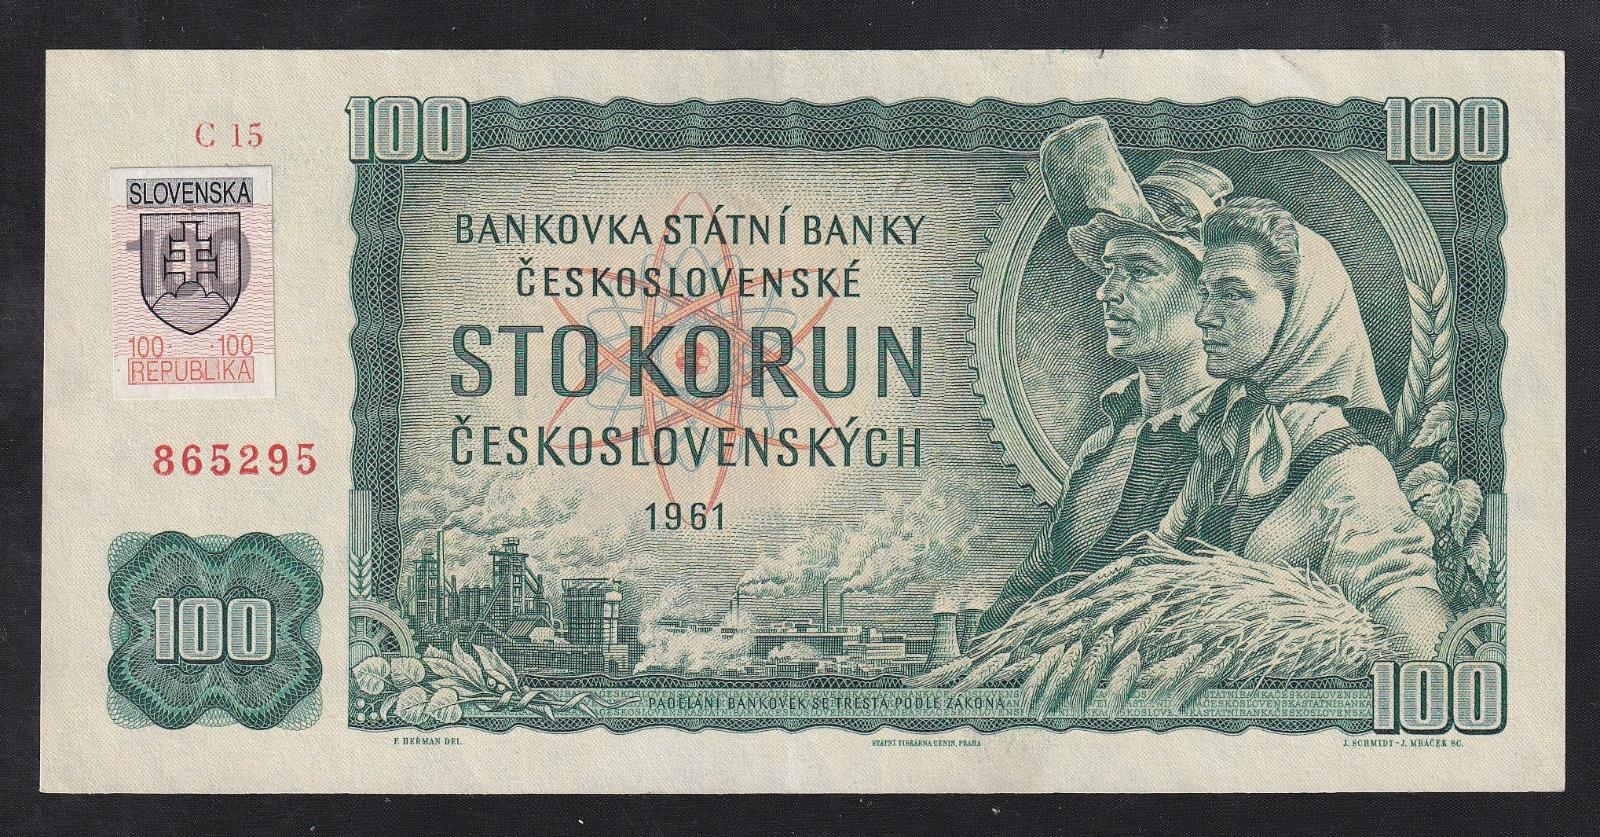 VZÁCNA 100 KORUNA 1961 SÉRIA C SO SLOVENSKÝM KOLKOM - JEMNE PREHLANÁ - Bankovky